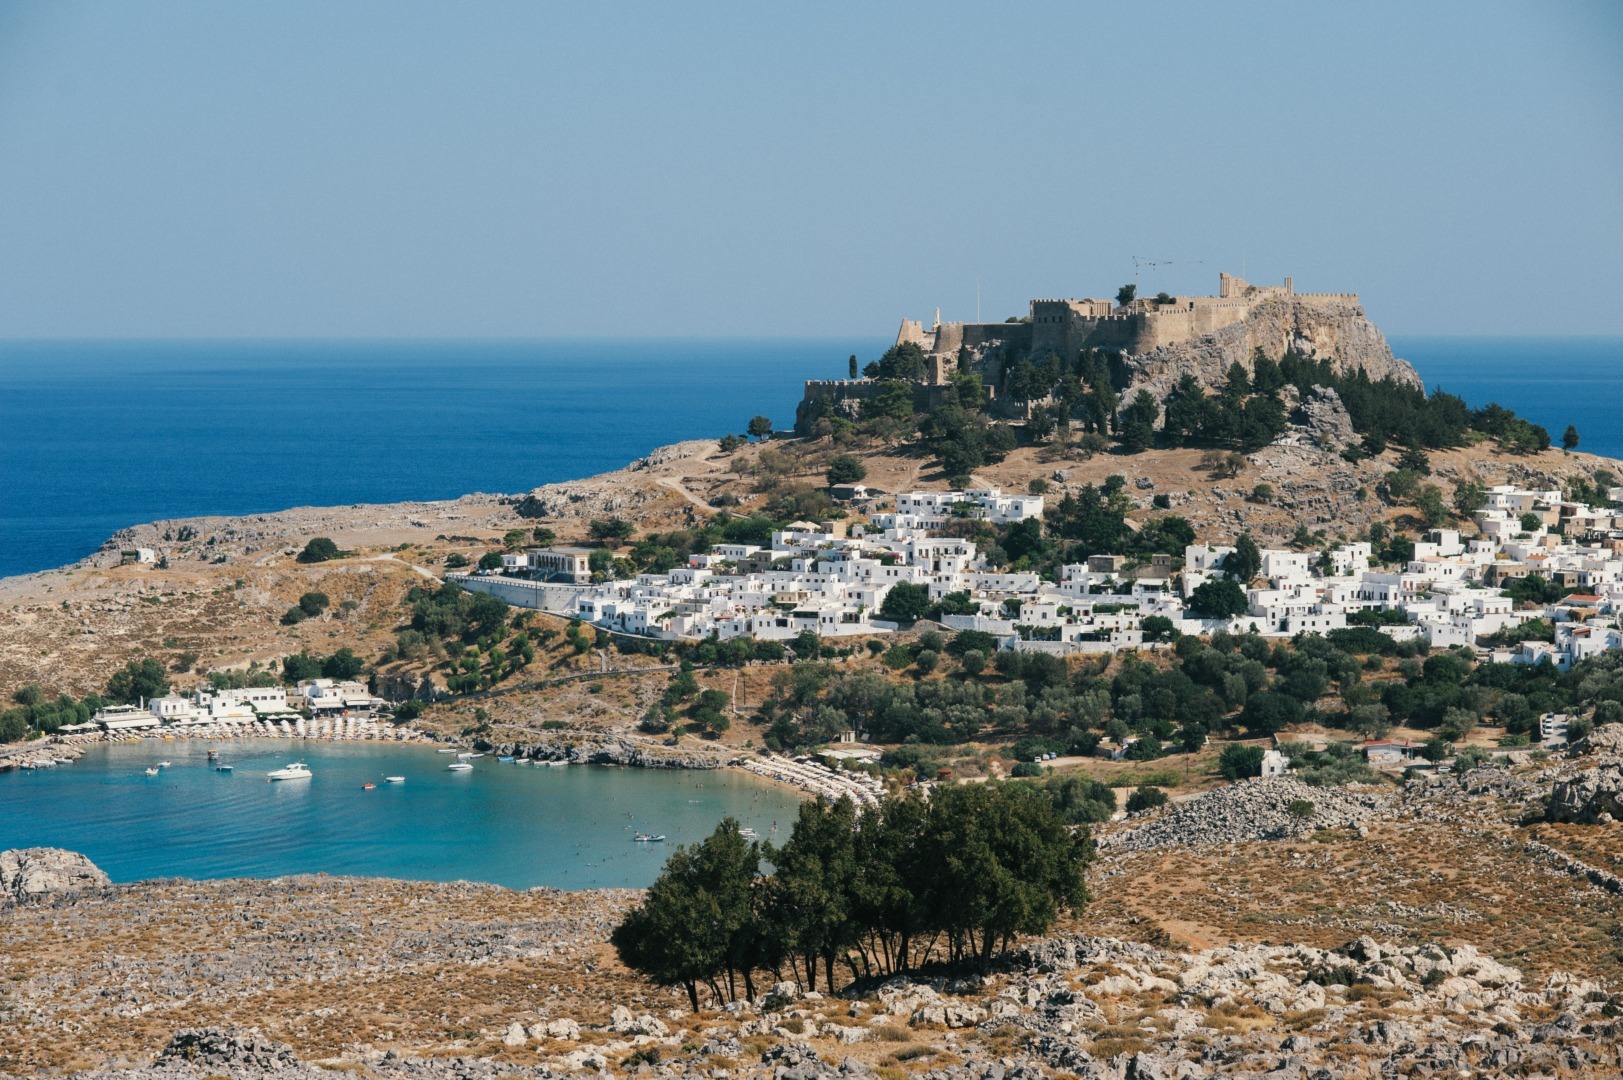 Guvernul grec oferă o săptămână de vacanţă gratuită turiştilor evacuaţi din Rodos din cauza incendiilor